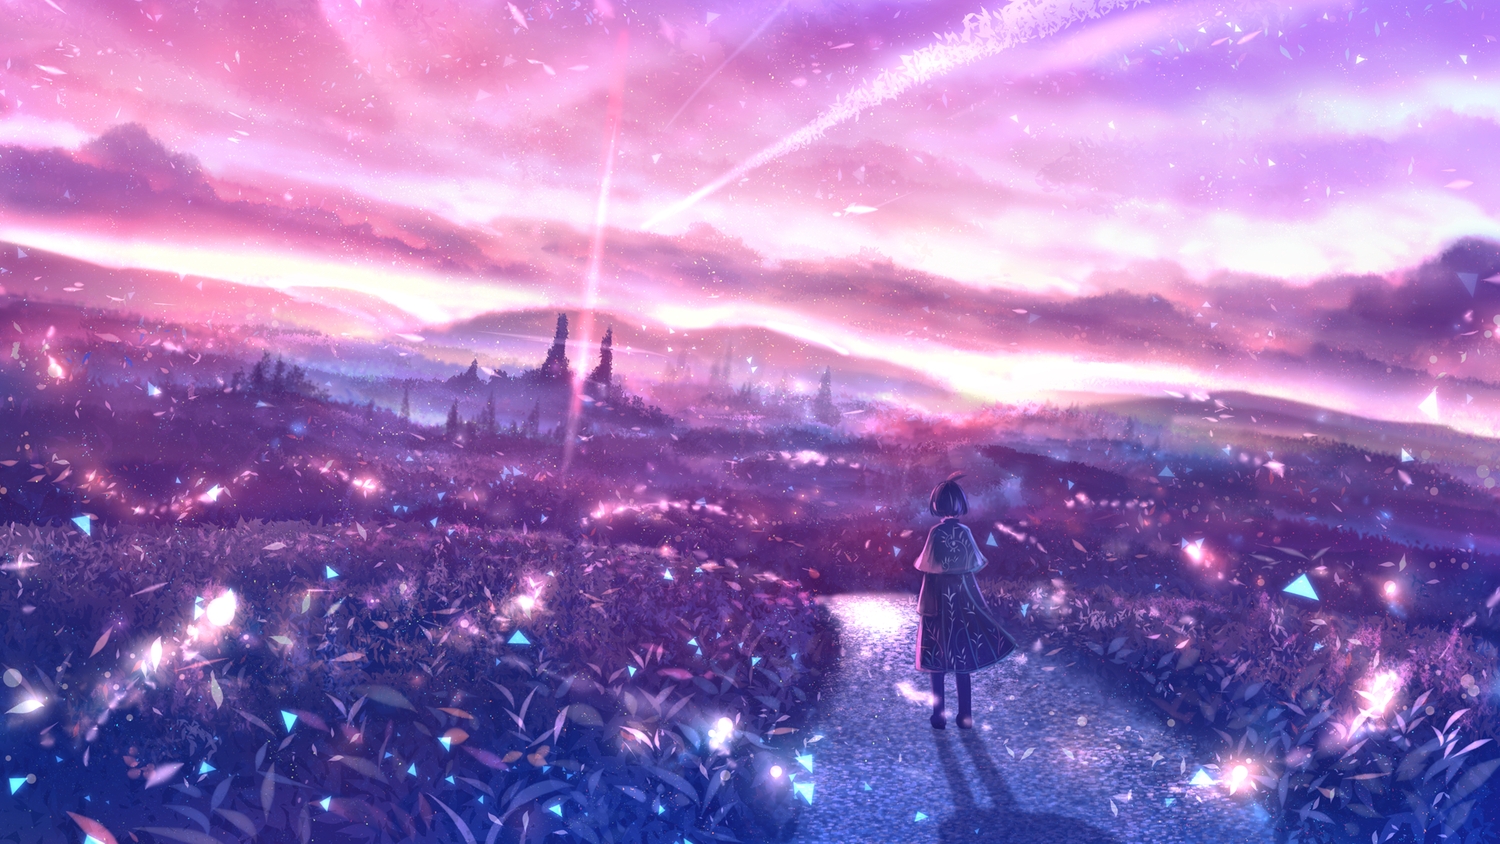 Anime 1500x844 moescape anime girls anime sky standing landscape fantasy art sunlight fantasy girl